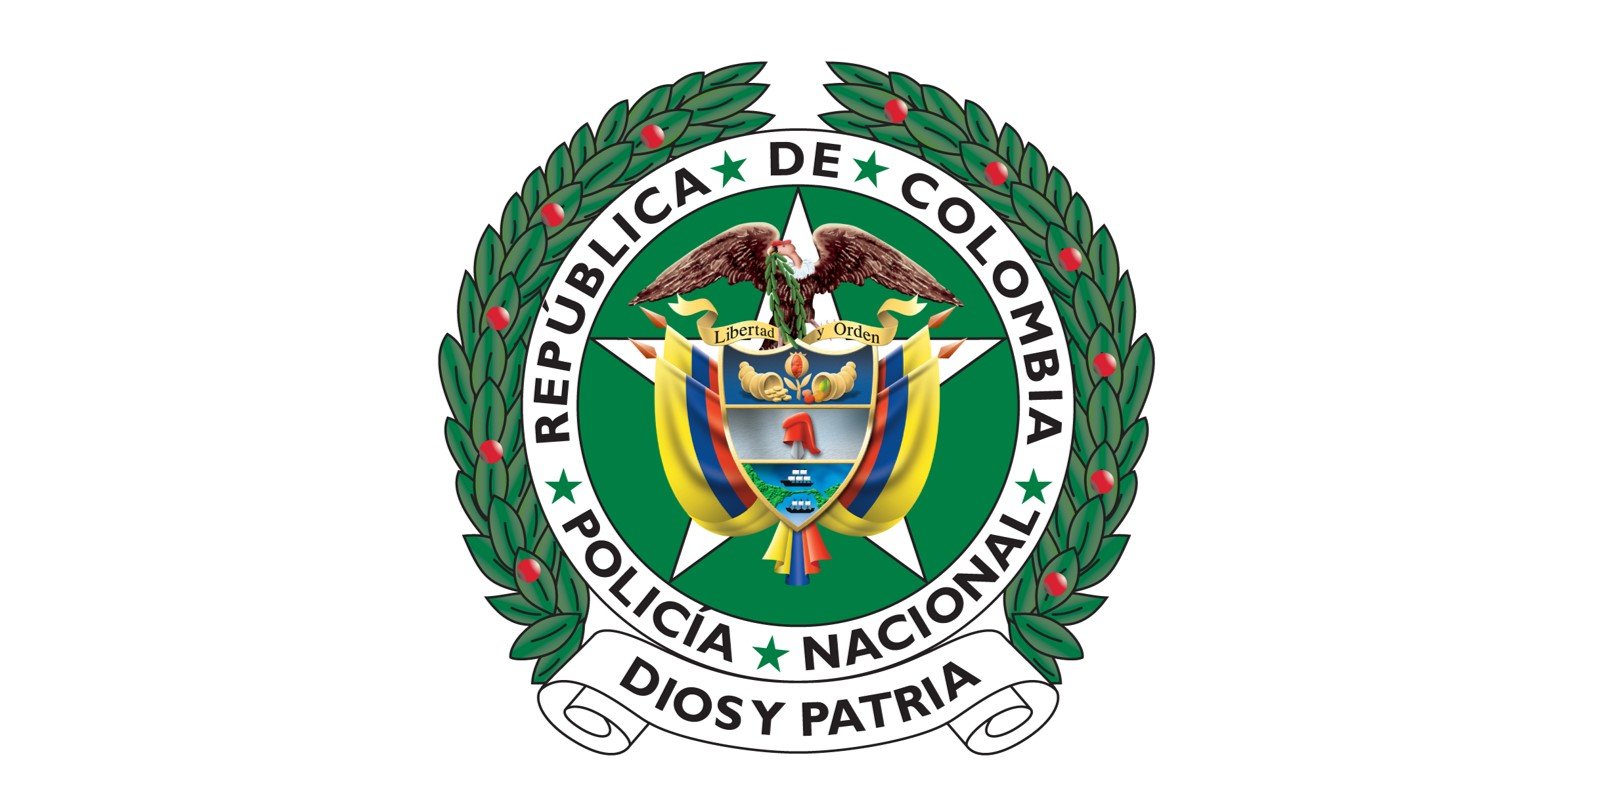 Policía Nacional logo.jpg